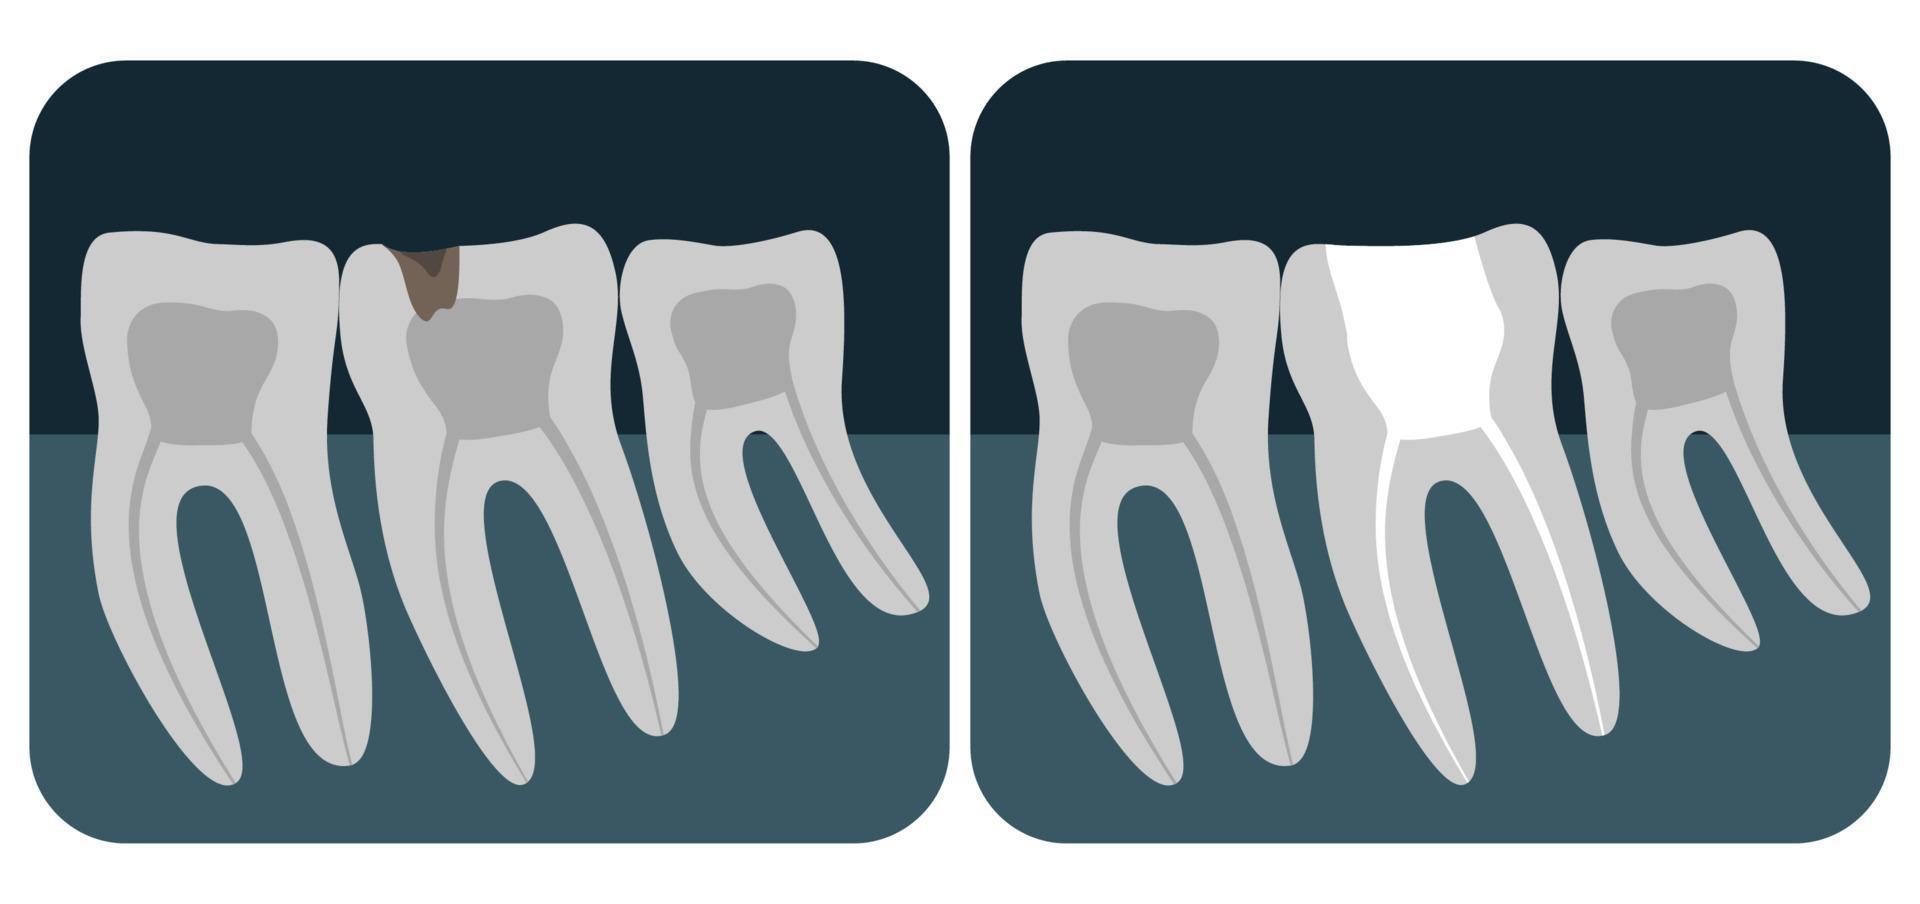 X-ray of human teeth. Three healthy molars on an x-ray. Vector illustration.